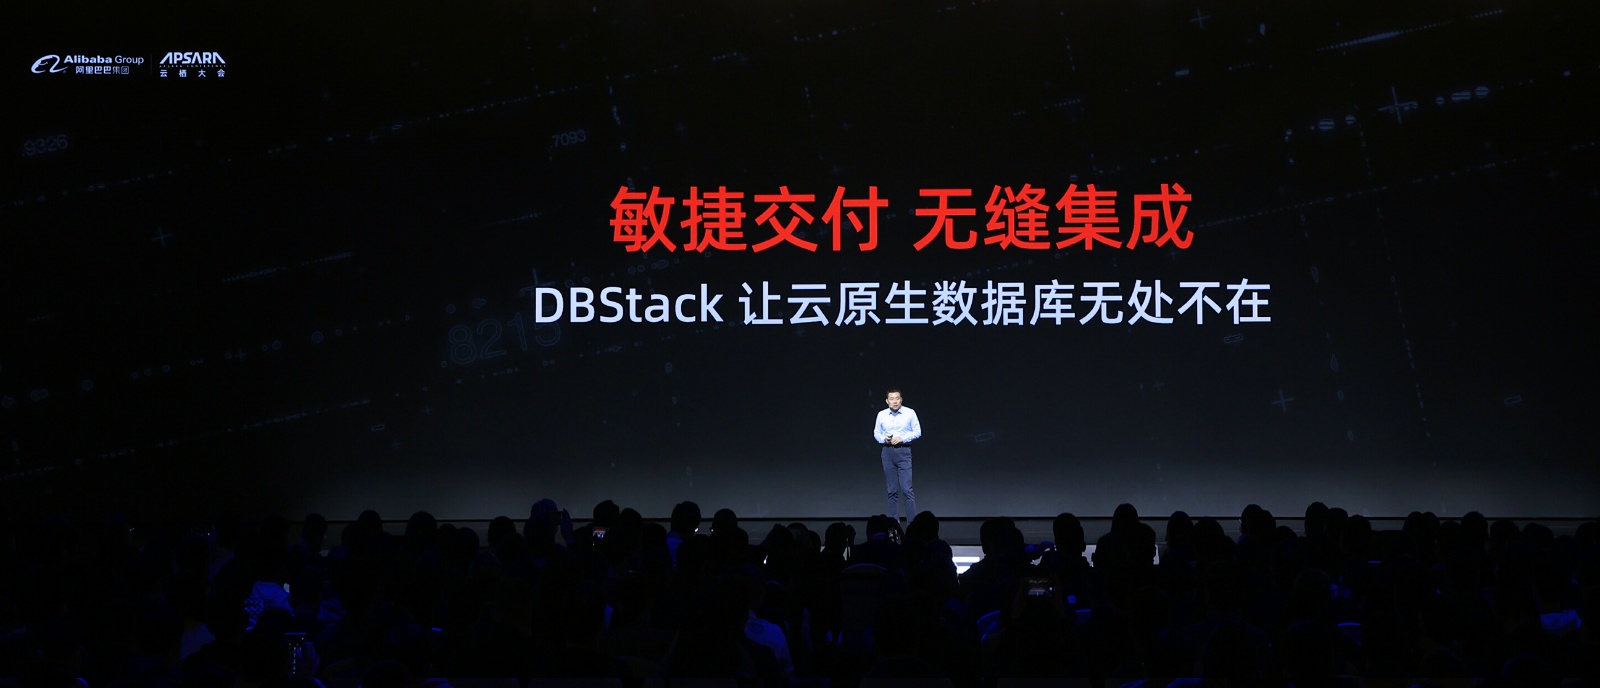 阿里云数据库全面服务政企市场 发布重磅数据库产品DBStack